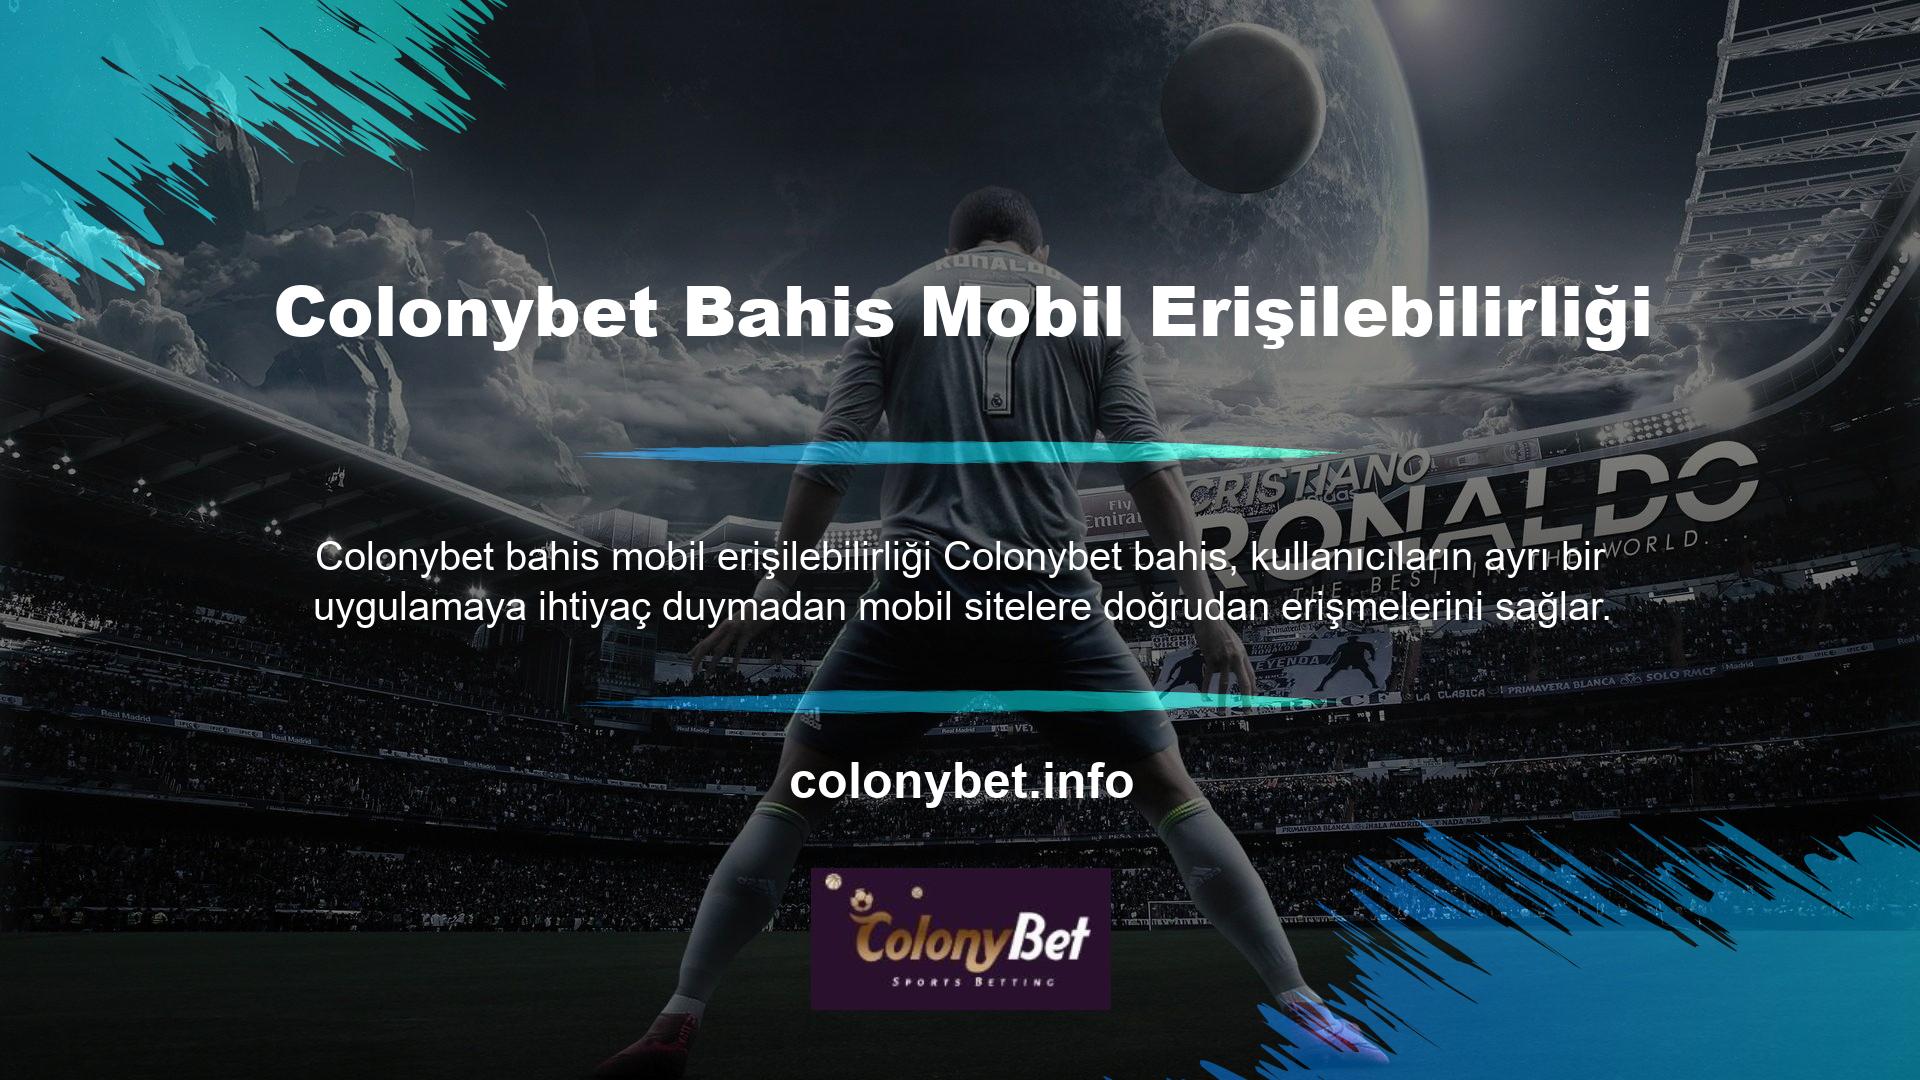 Bu yöntem sayesinde Colonybet bahis Mobile web sitesine herhangi bir markanın akıllı telefonu veya tableti kullanılarak erişilebilir